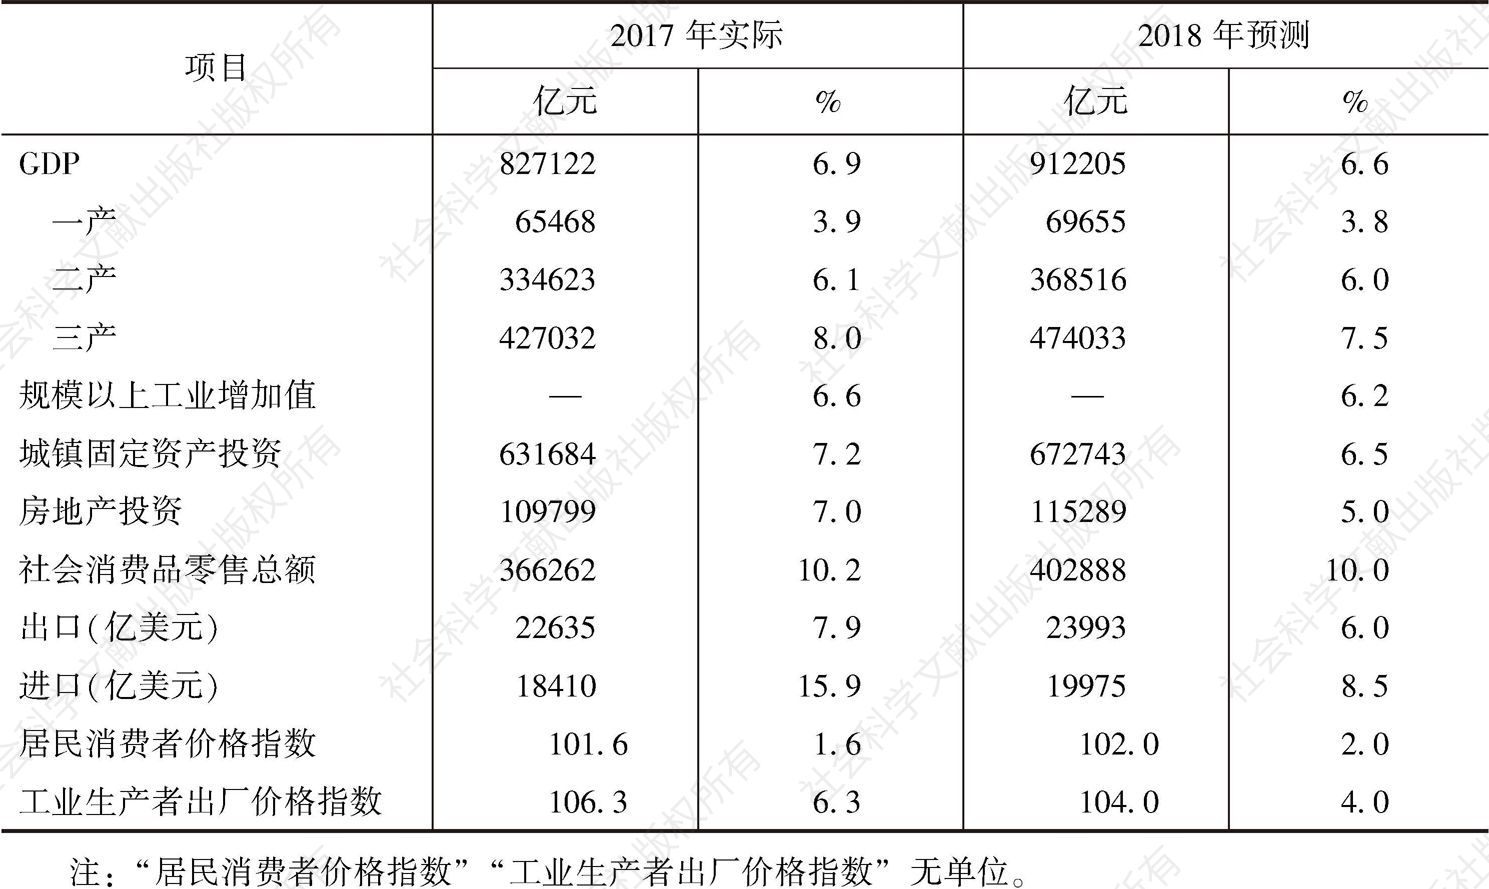 表1 2018年中国主要宏观经济指标预测